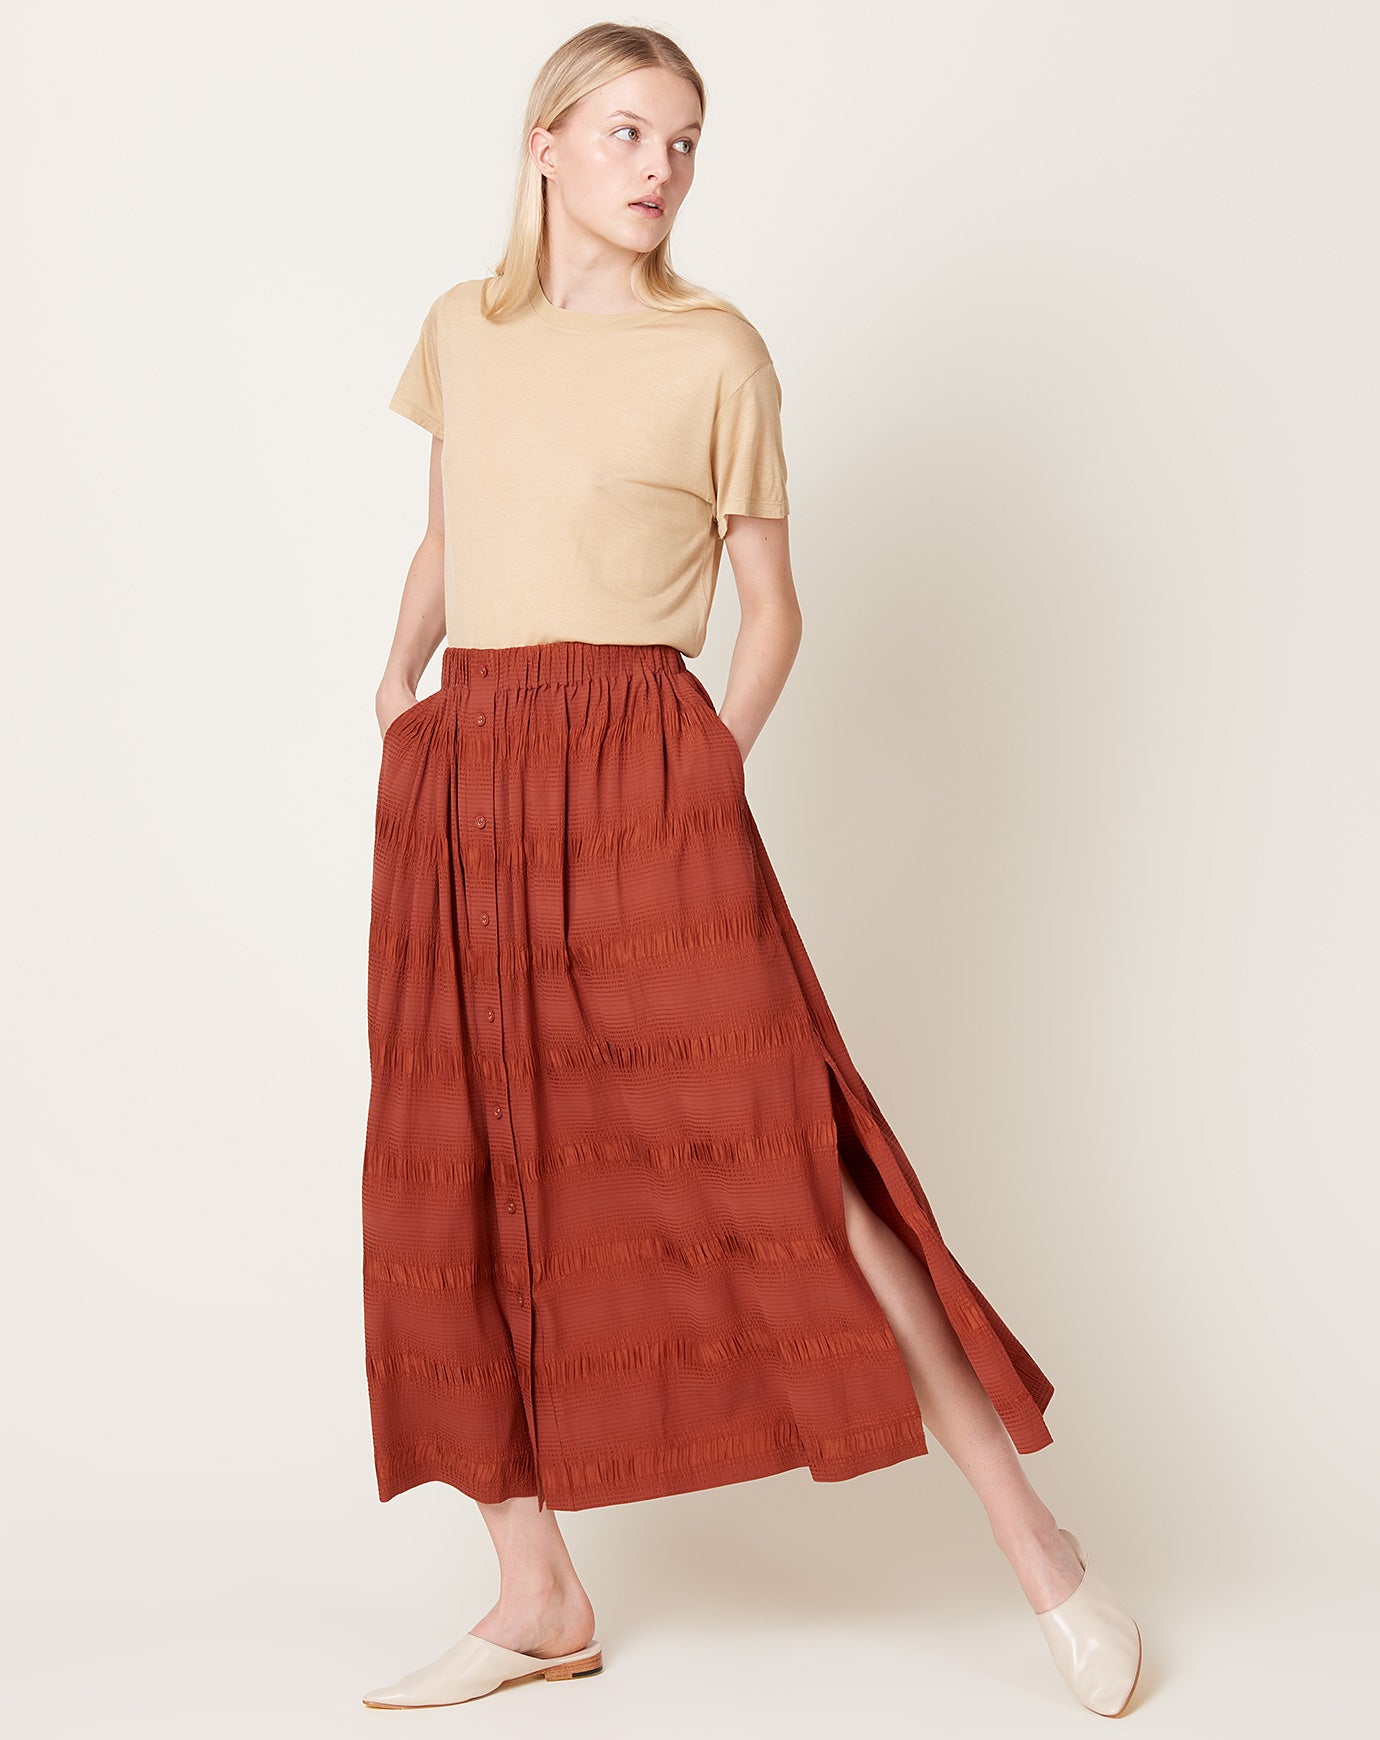 Rachel Comey Modo Skirt in Terracotta